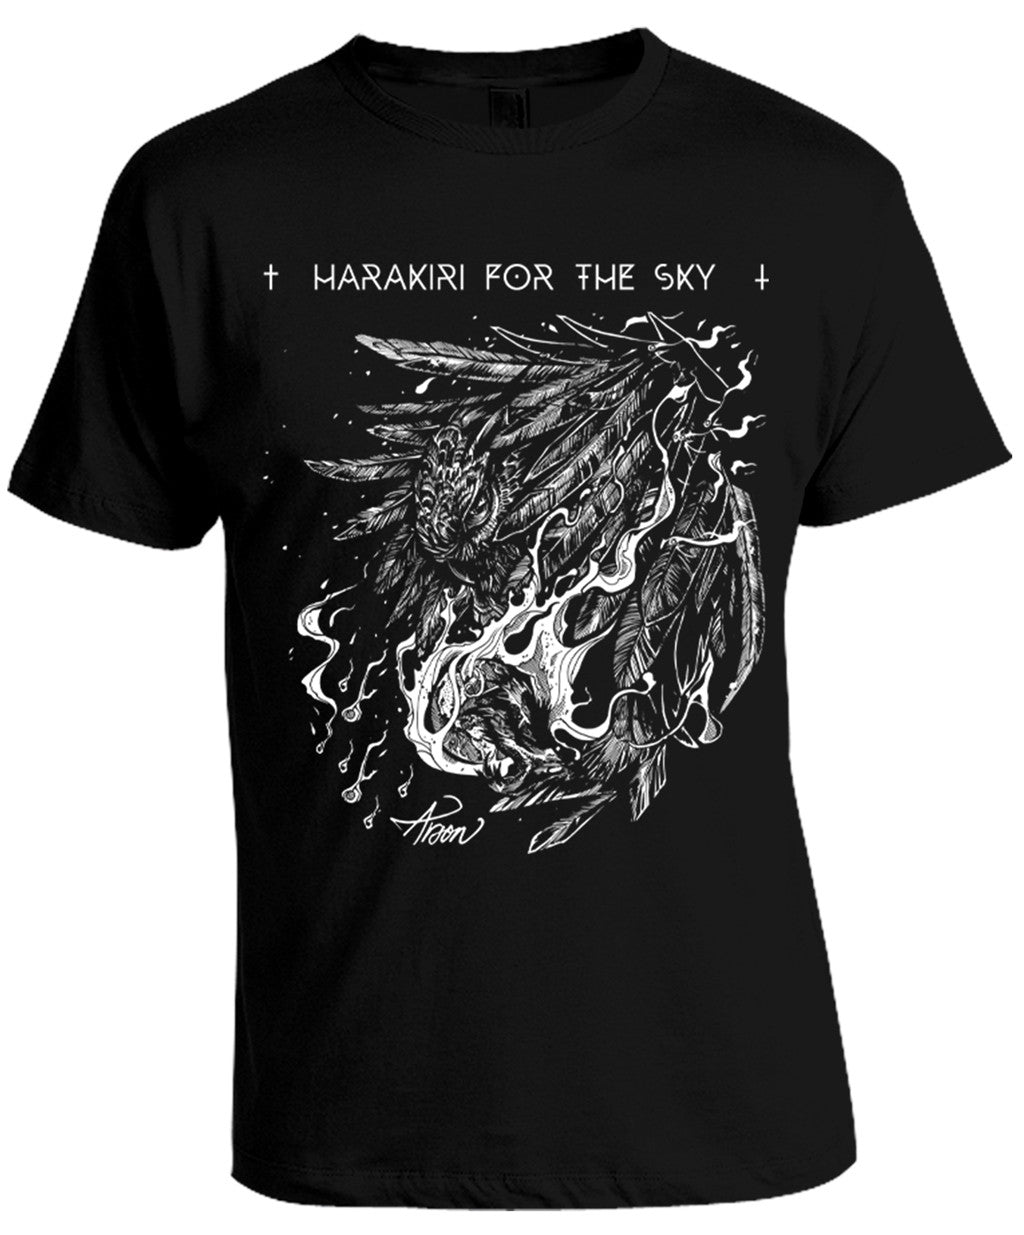 Harakiri for the Sky - Arson White Print Short Sleeved T-shirt